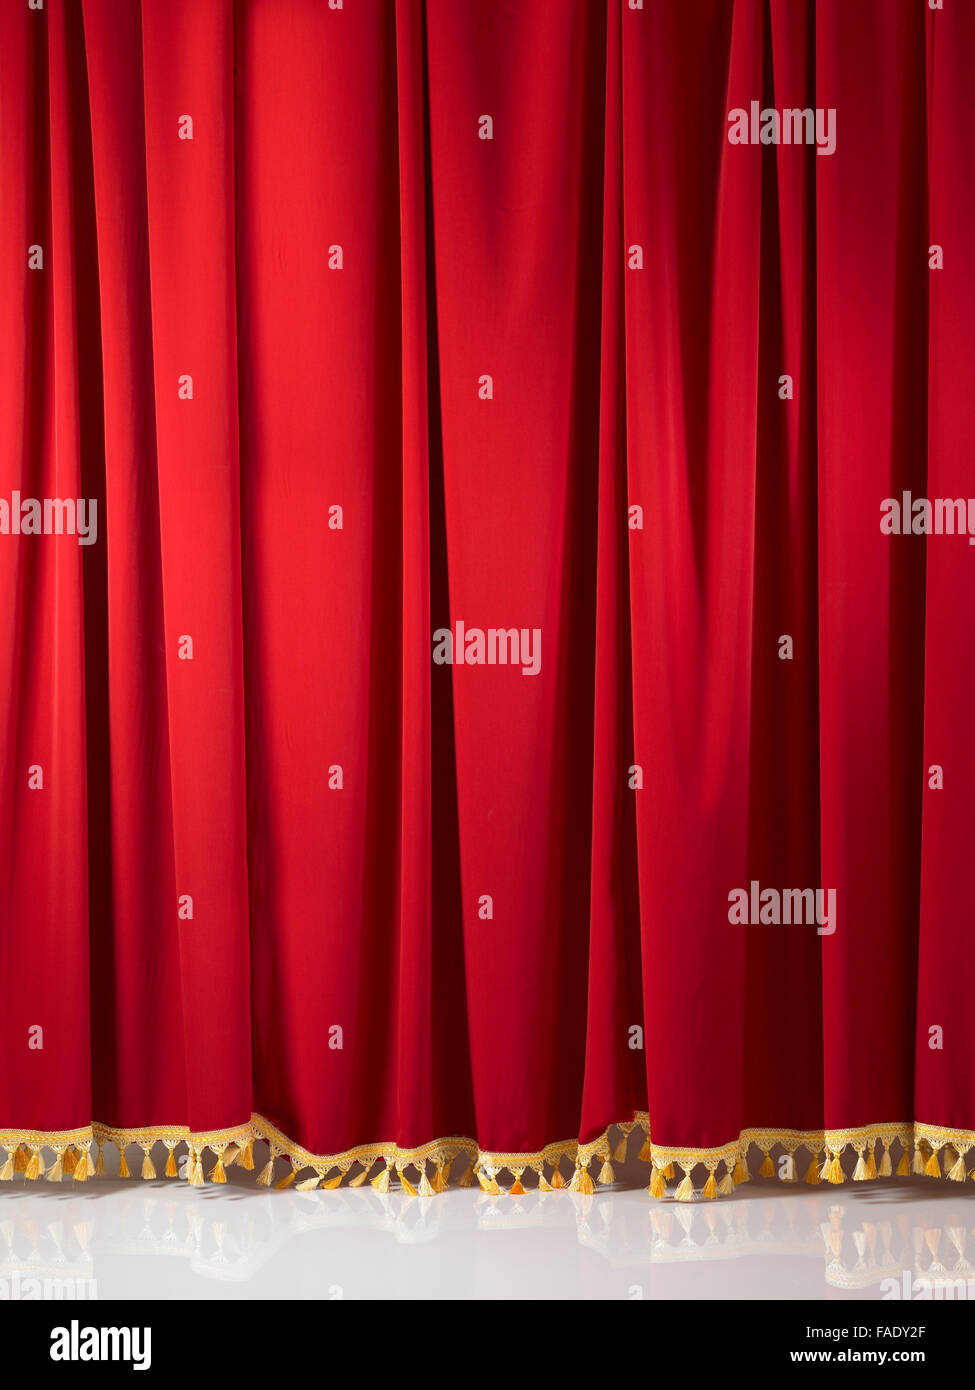 Rideaux de scène rouge avec glands d'or Banque D'Images